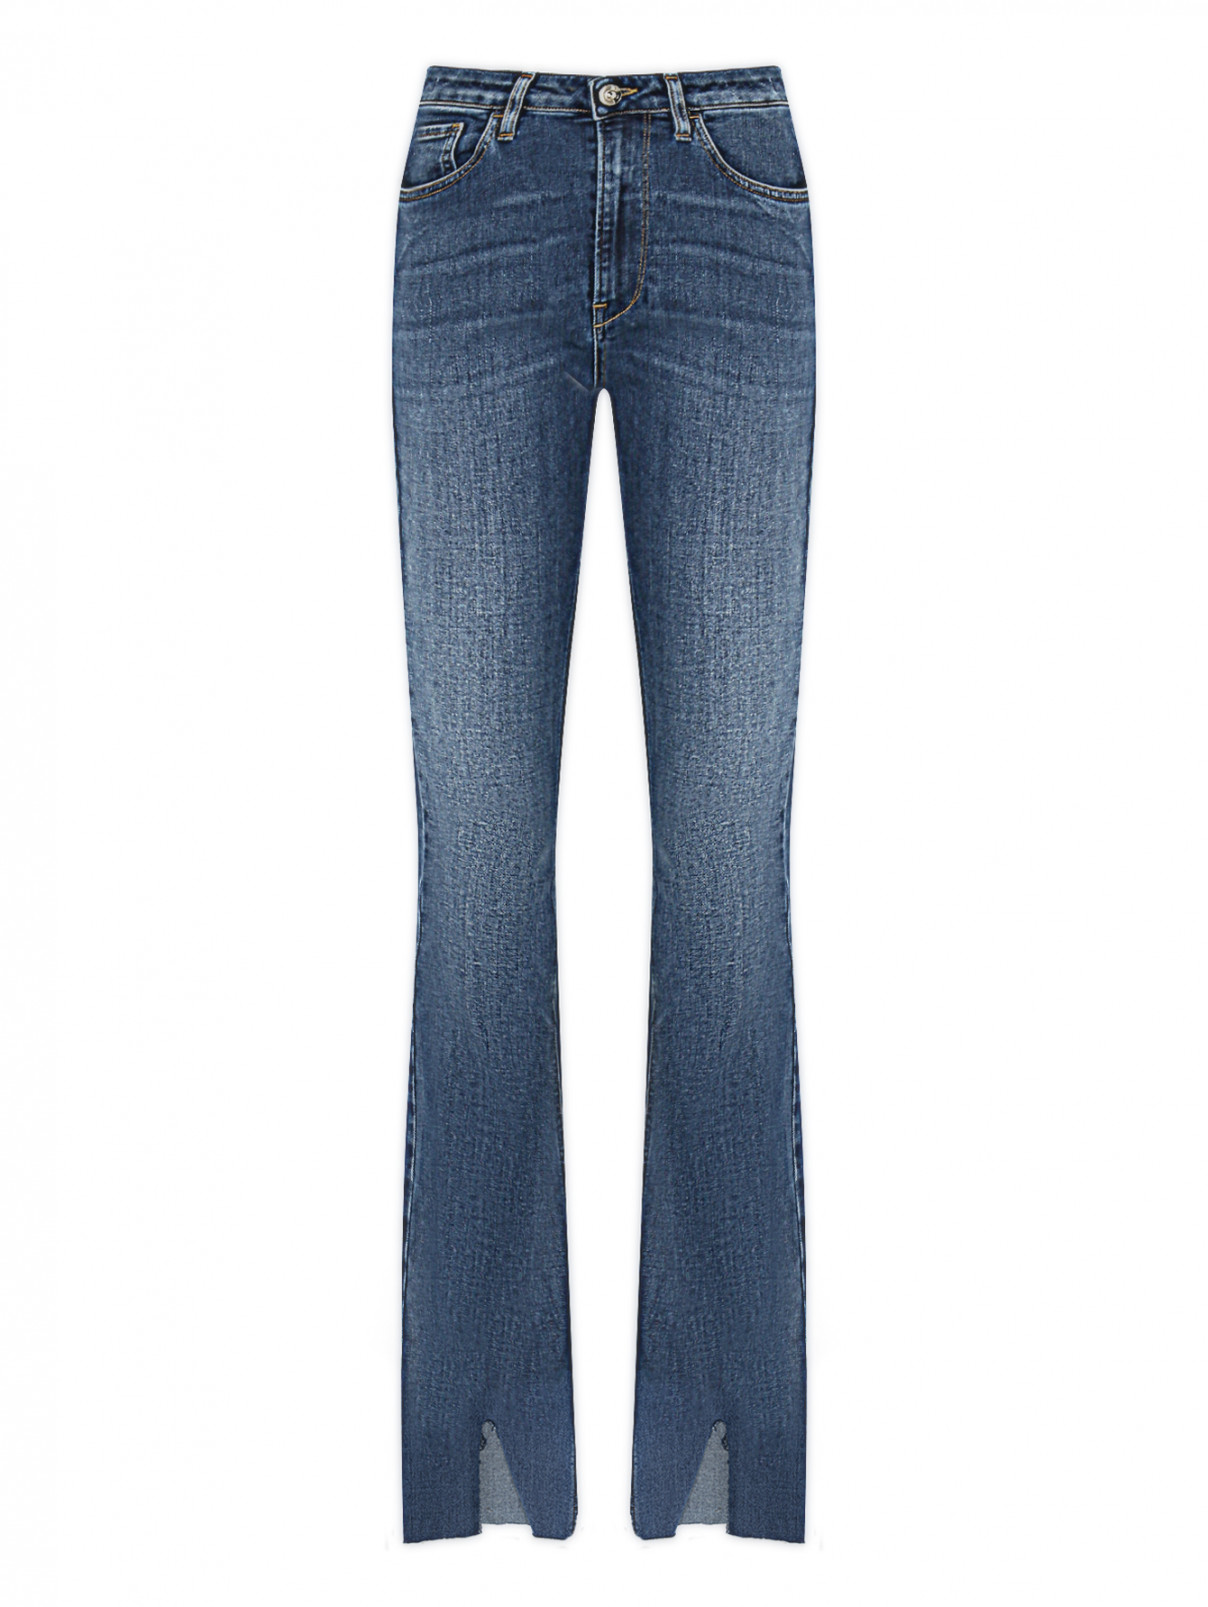 Расклешенные джинсы с разрезами 3x1  –  Общий вид  – Цвет:  Синий